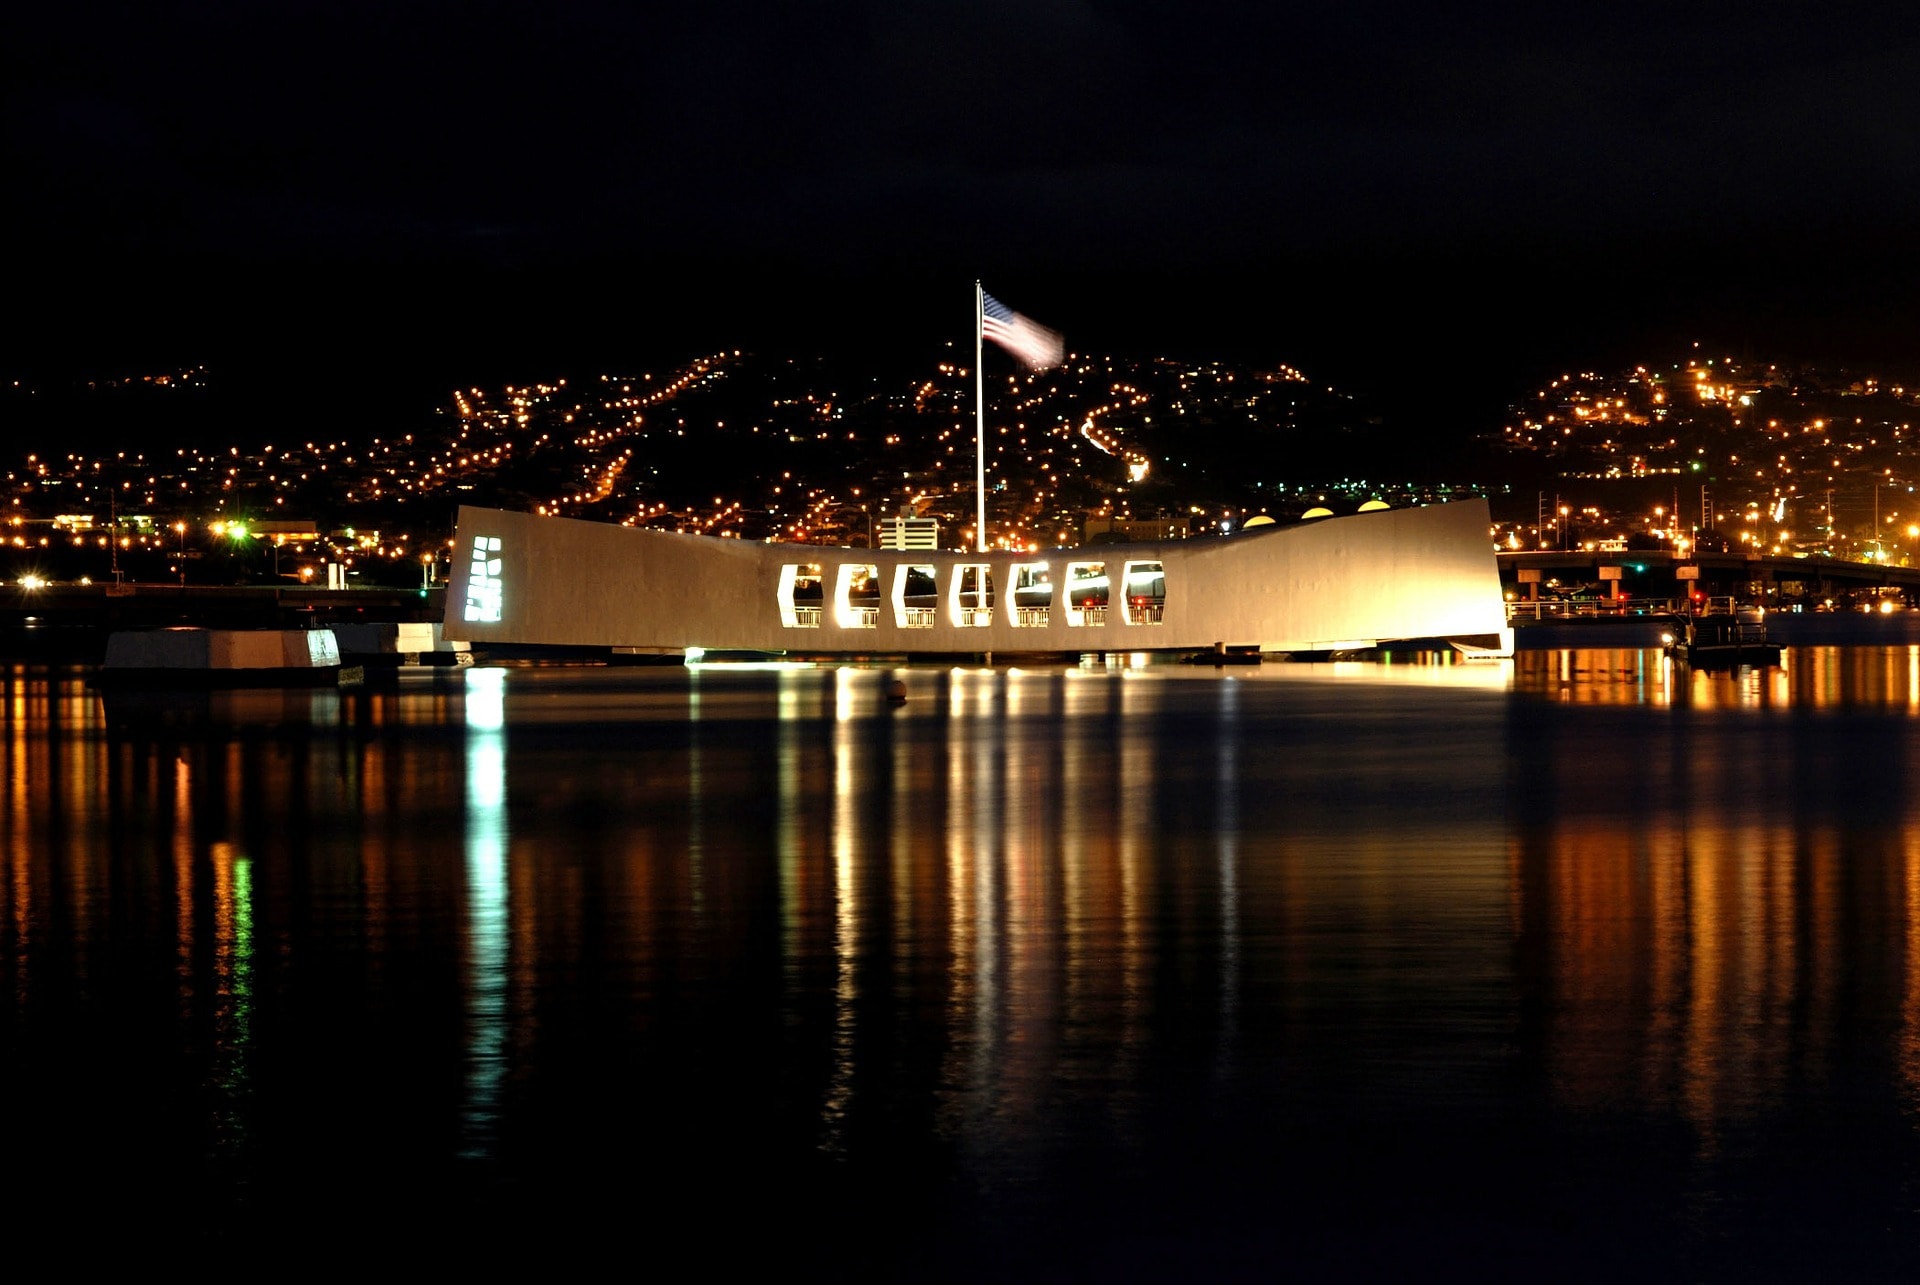 The Pearl Harbor Memorial Oahu historical site